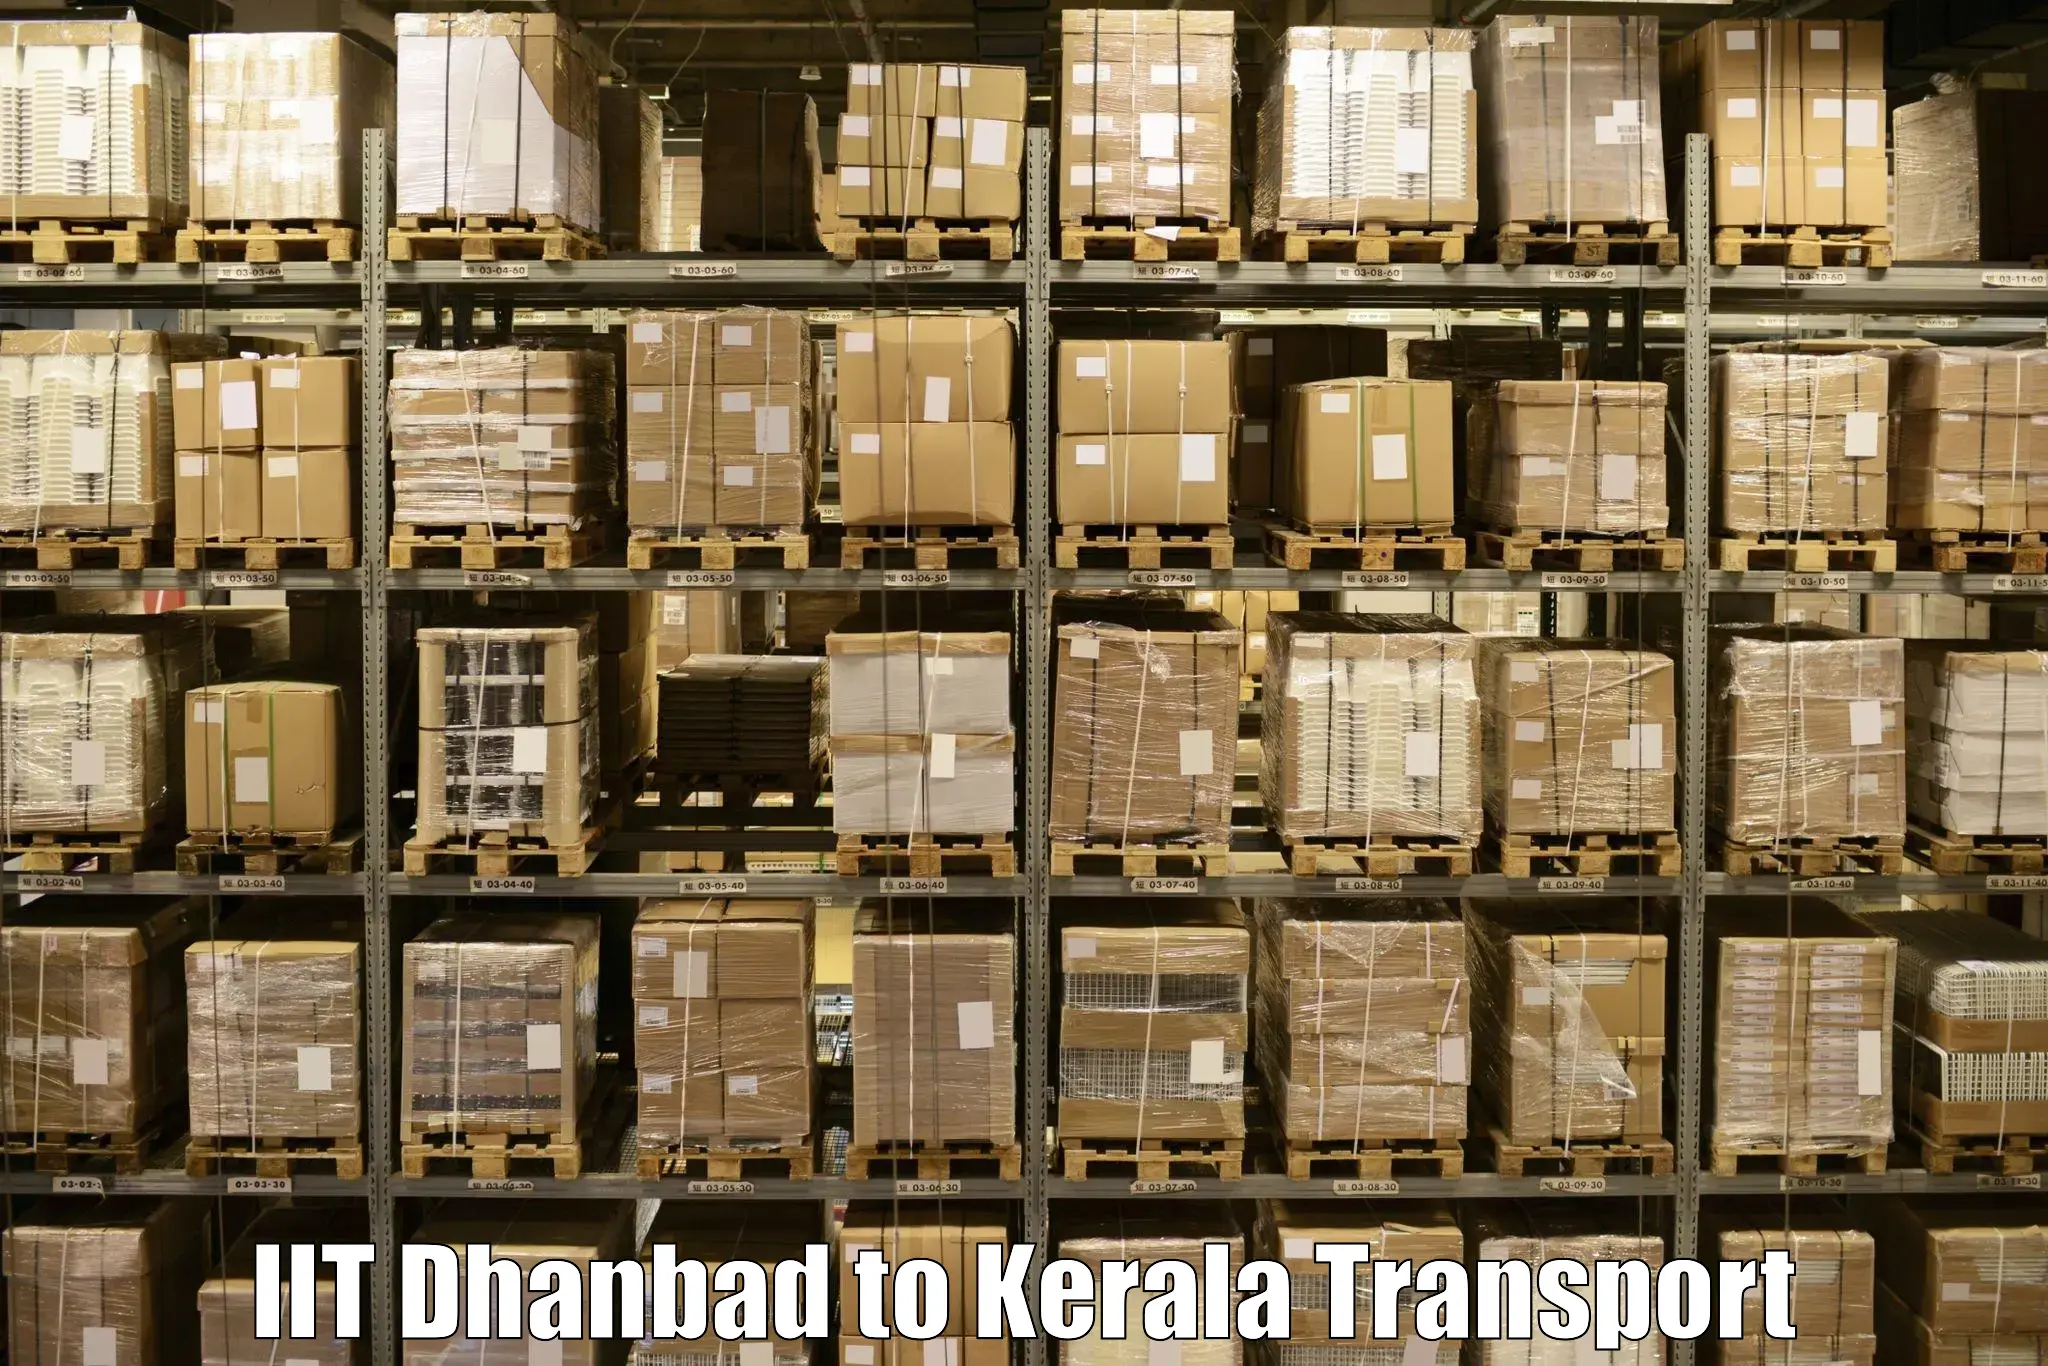 Delivery service IIT Dhanbad to Mahatma Gandhi University Kottayam